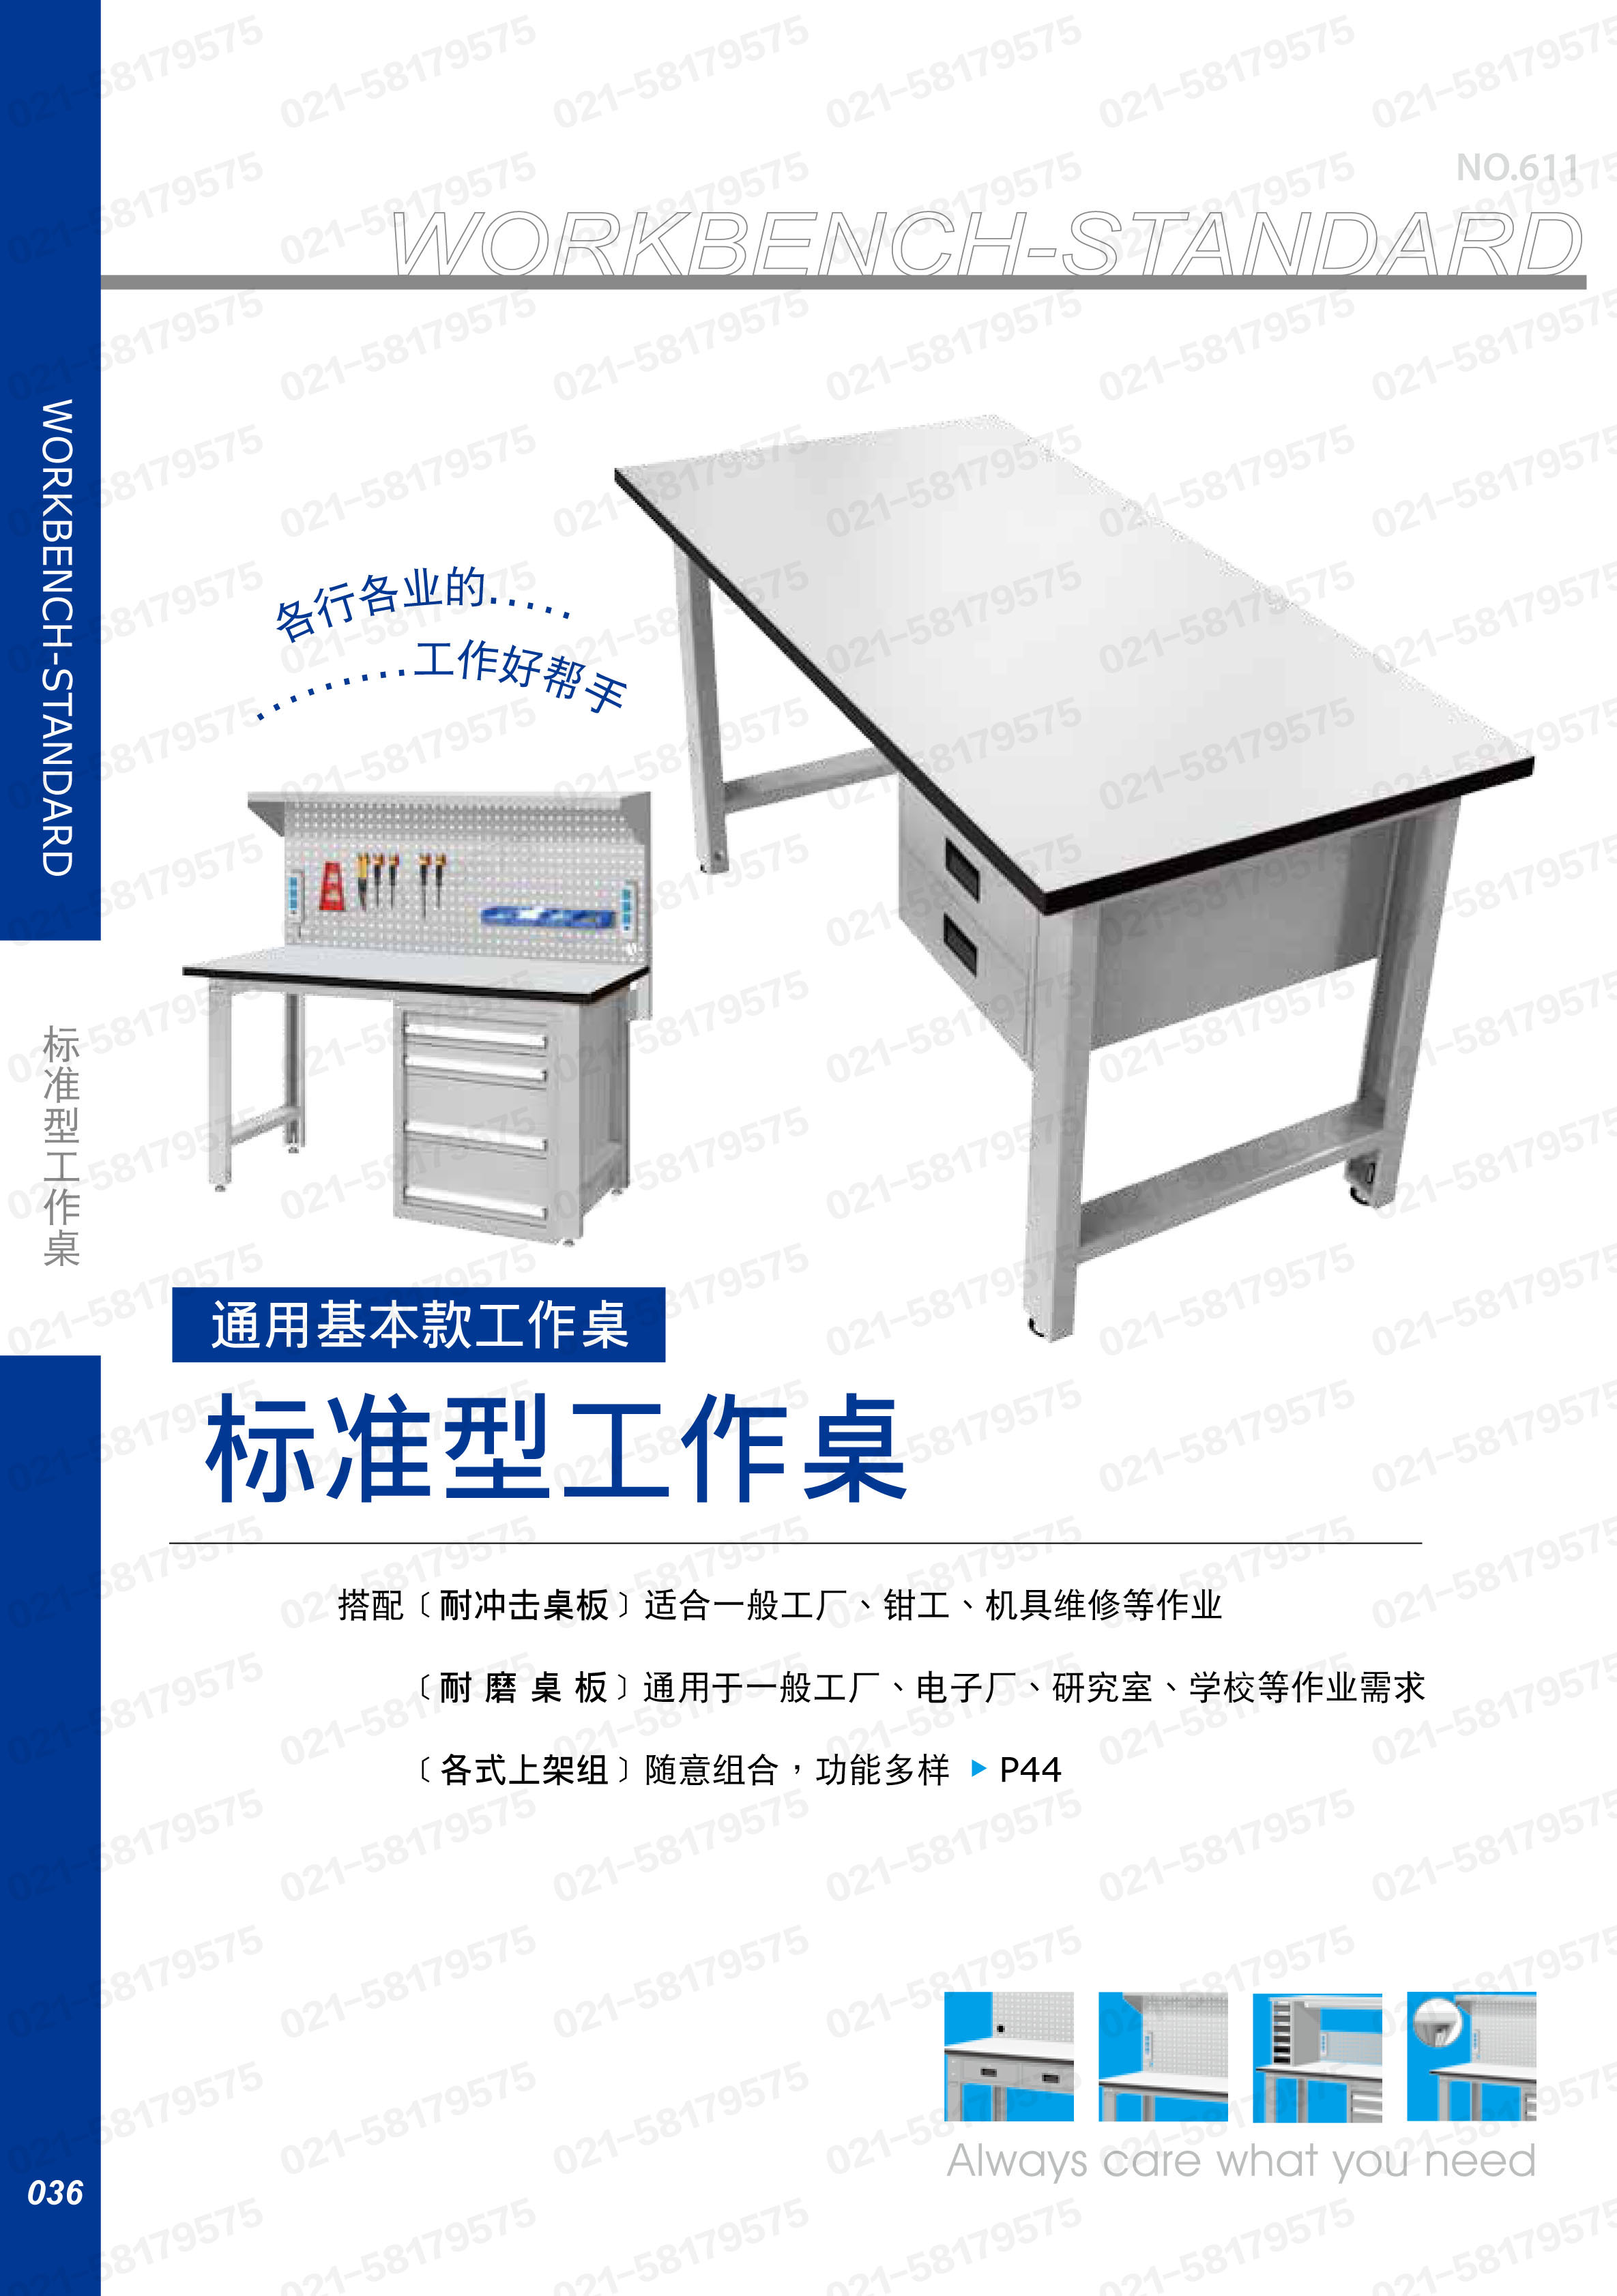 轻型工作桌1800×750×800mm 耐冲击桌板 带四抽边柜,WBS-67041N,5D2947